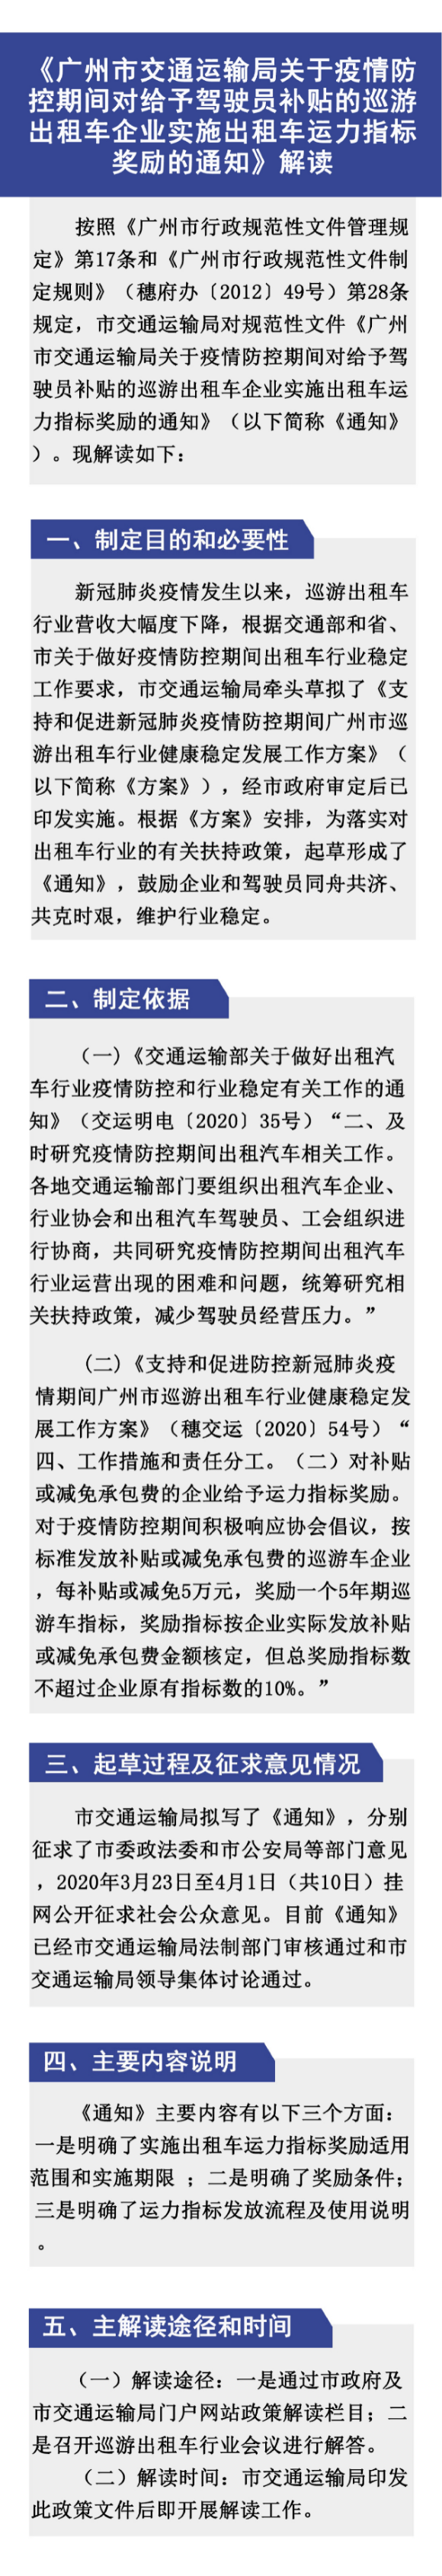 《广州市交通运输局关于疫情防控期间对给予驾驶员补贴的巡游出租车企业实施出租车运力指标奖励的通知》解读材料2_page-0001.jpg